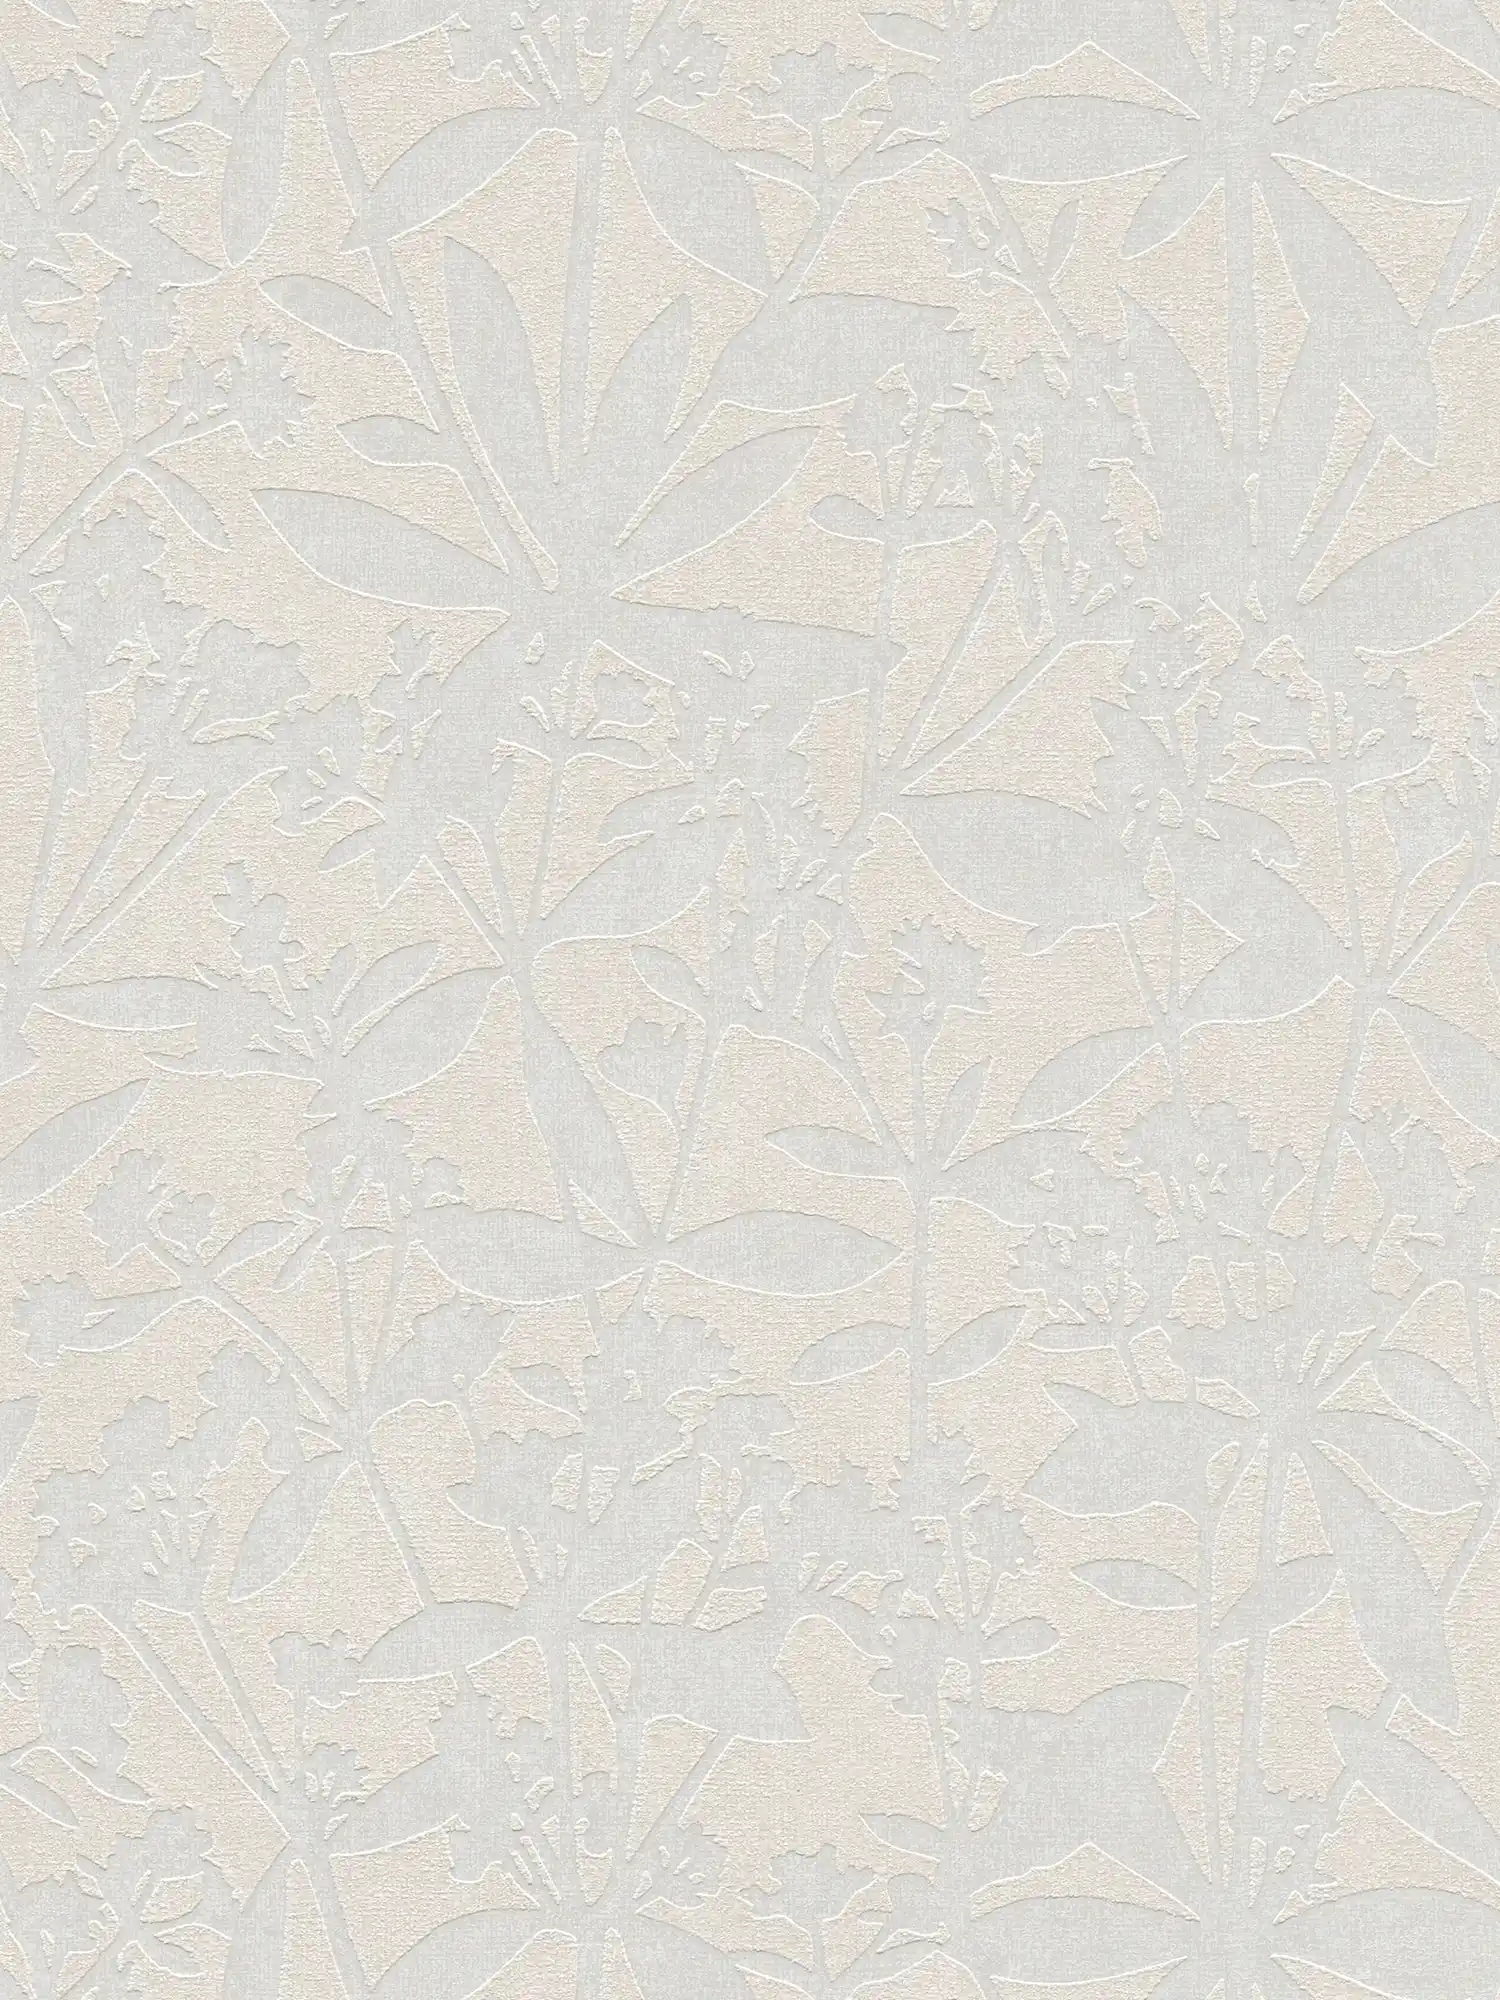 Florale Vliestapete mit Blumen Strukturmuster – Creme, Weiß
